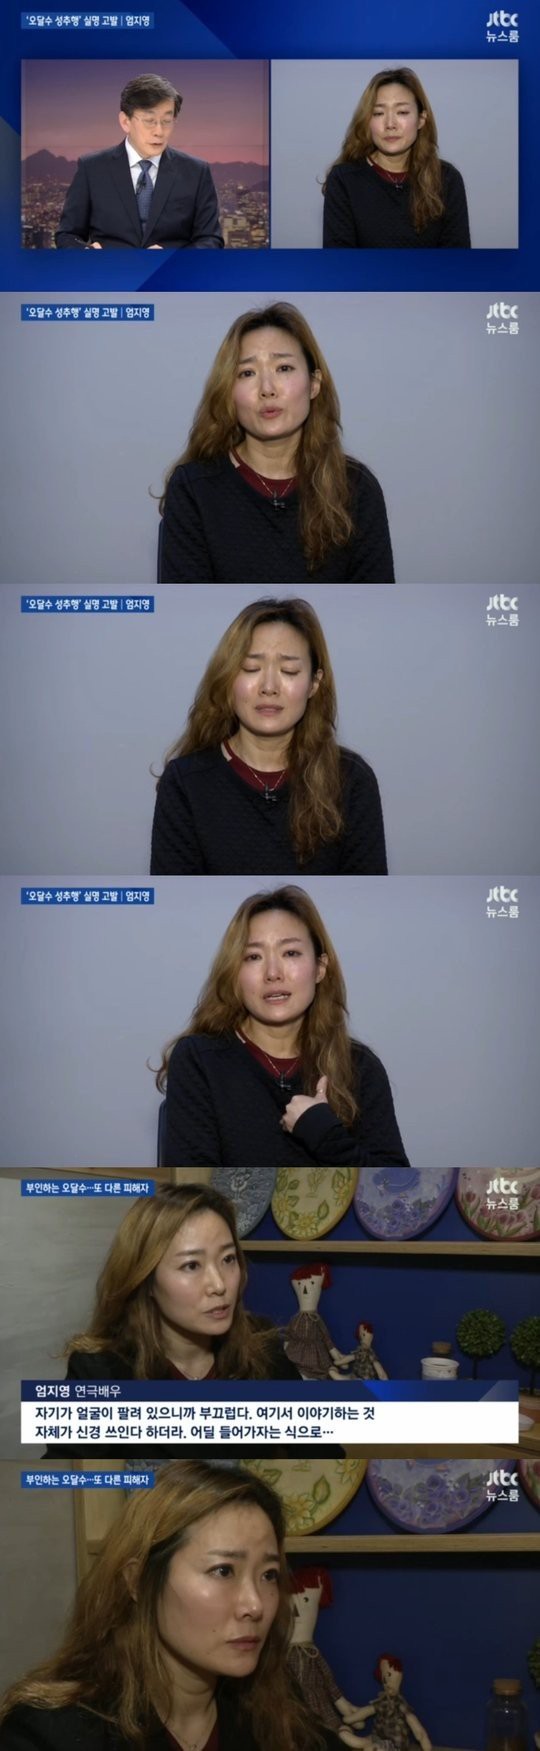 Nữ diễn viên lộ diện trên bản tin Hàn, trực tiếp kể lại vụ quấy rối tình dục của tài tử Điều kỳ diệu ở phòng giam số 7 - Ảnh 4.